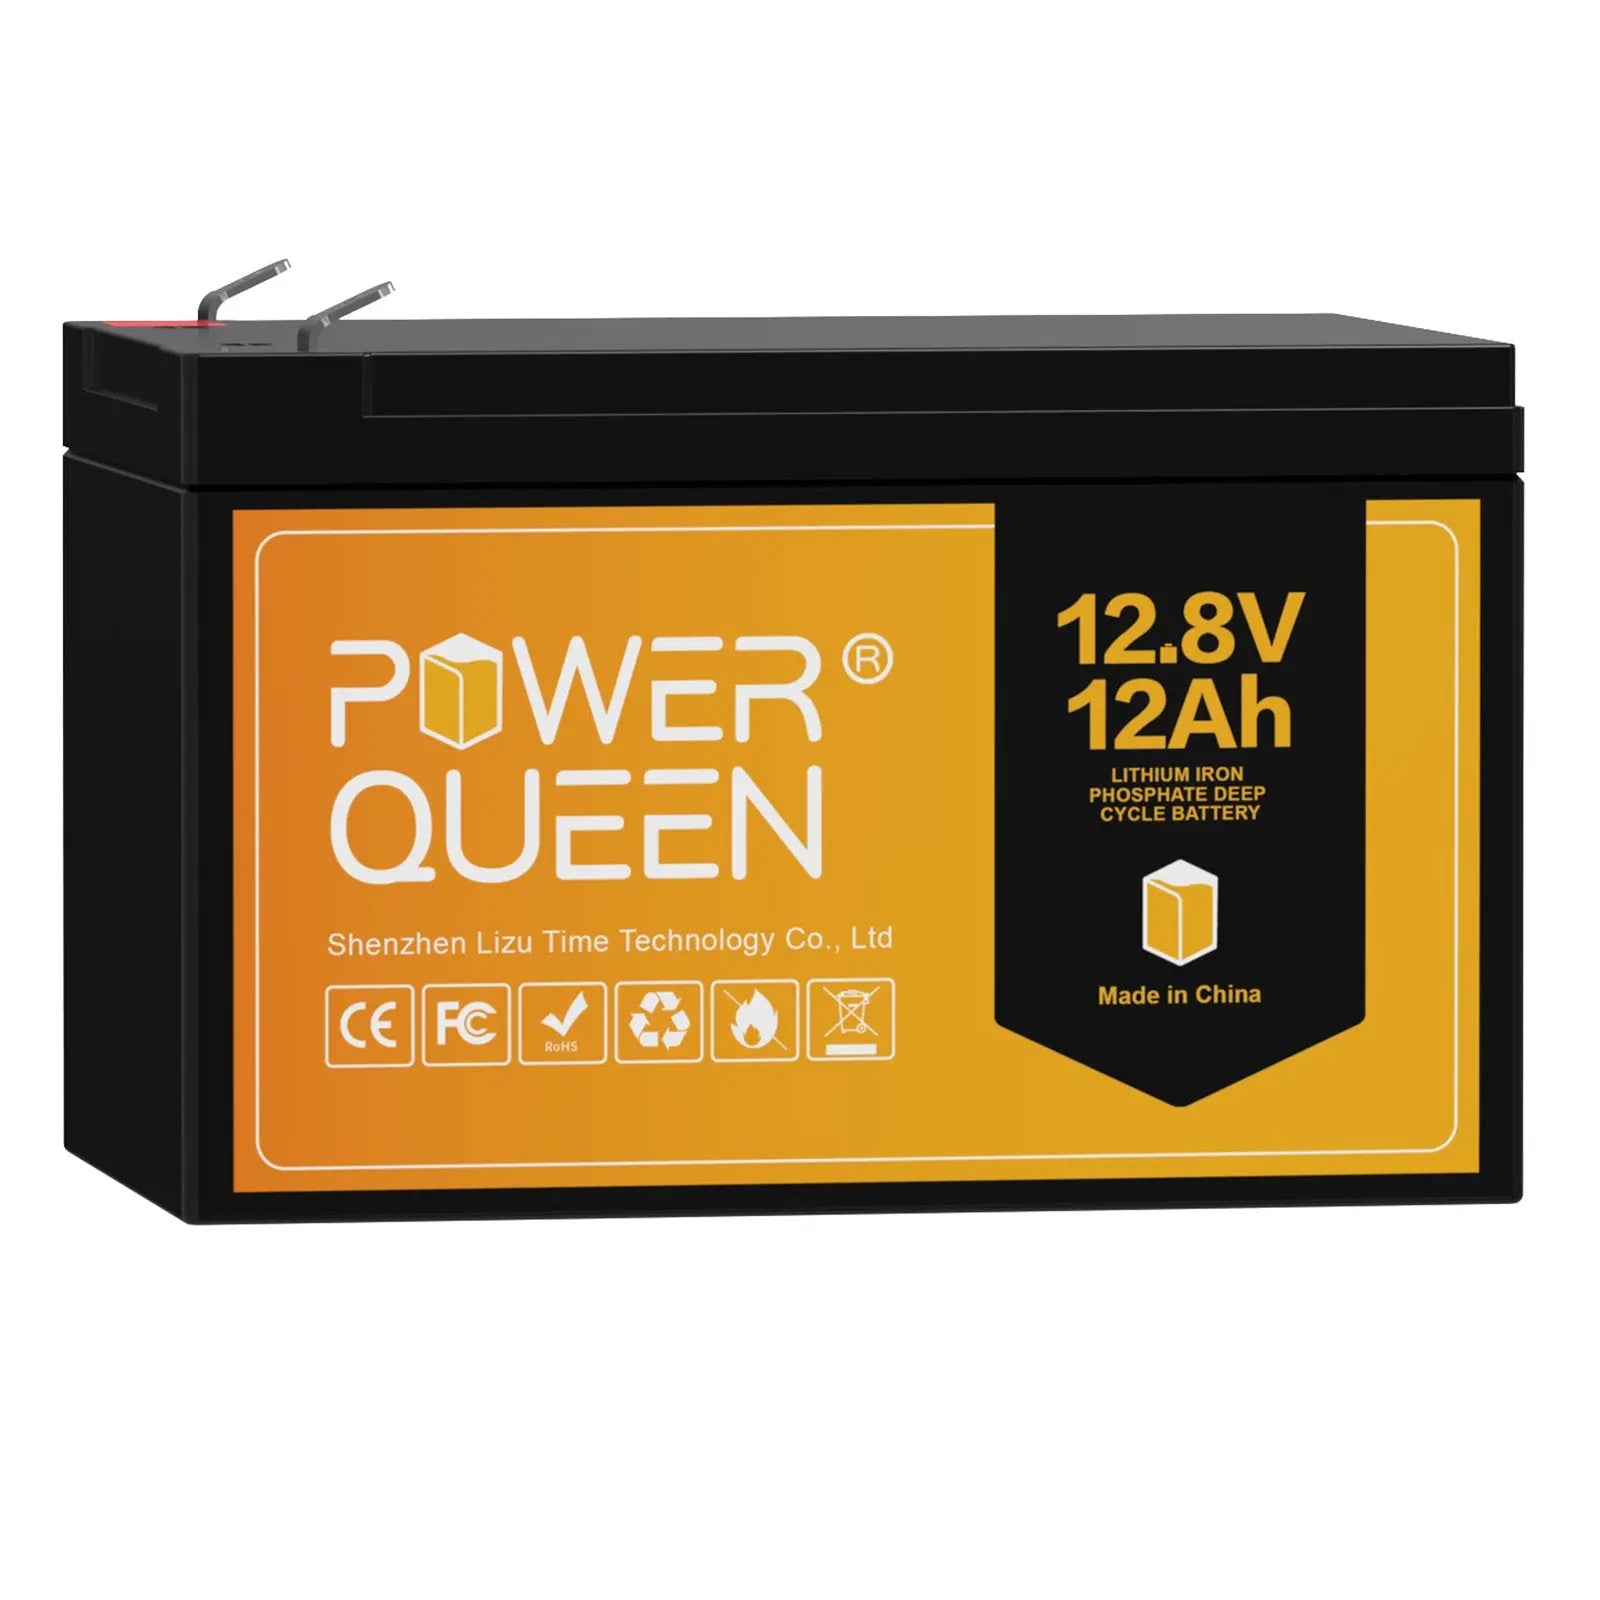 Power Queen 12.8V 12Ah LiFePO4 Battery, Built-IN 12A BMS Power Queen